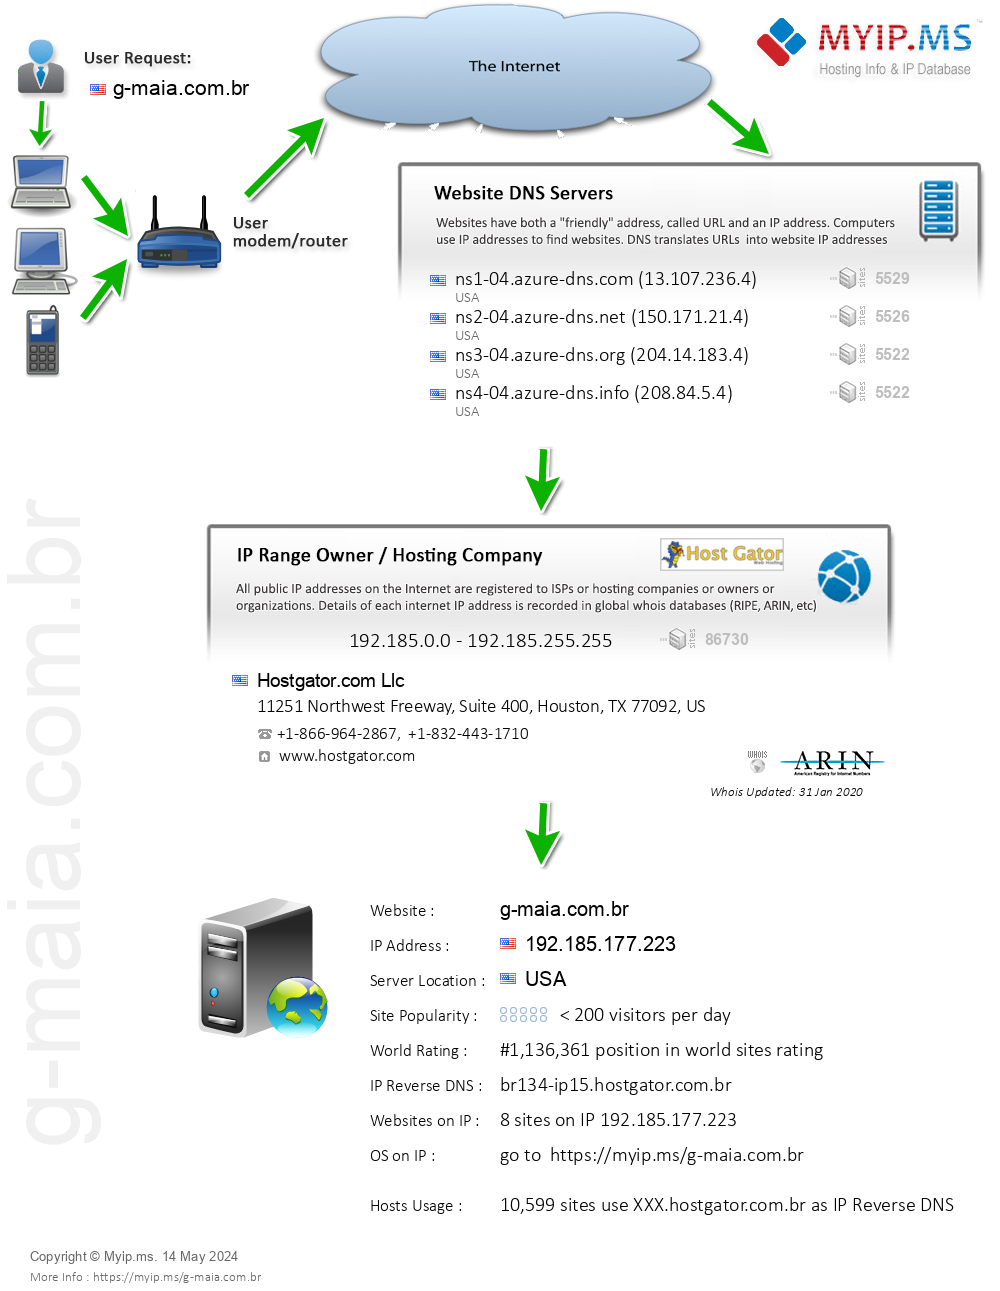 G-maia.com.br - Website Hosting Visual IP Diagram